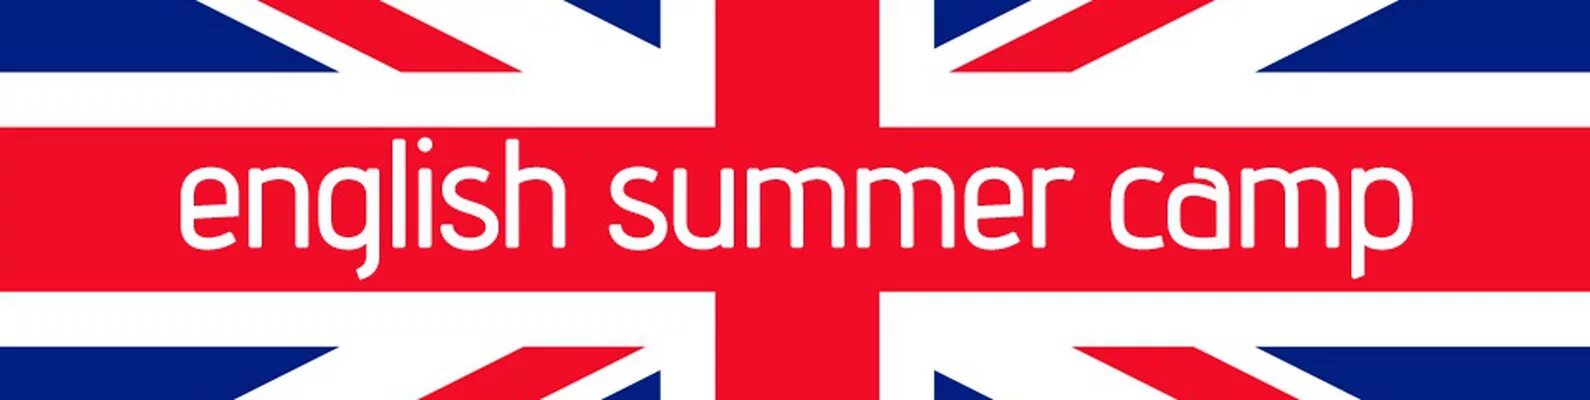 Инглиш кэмп. English Summer Camp. Английский летом. Логотип школы английского языка. Эмблема лето для английского языка.